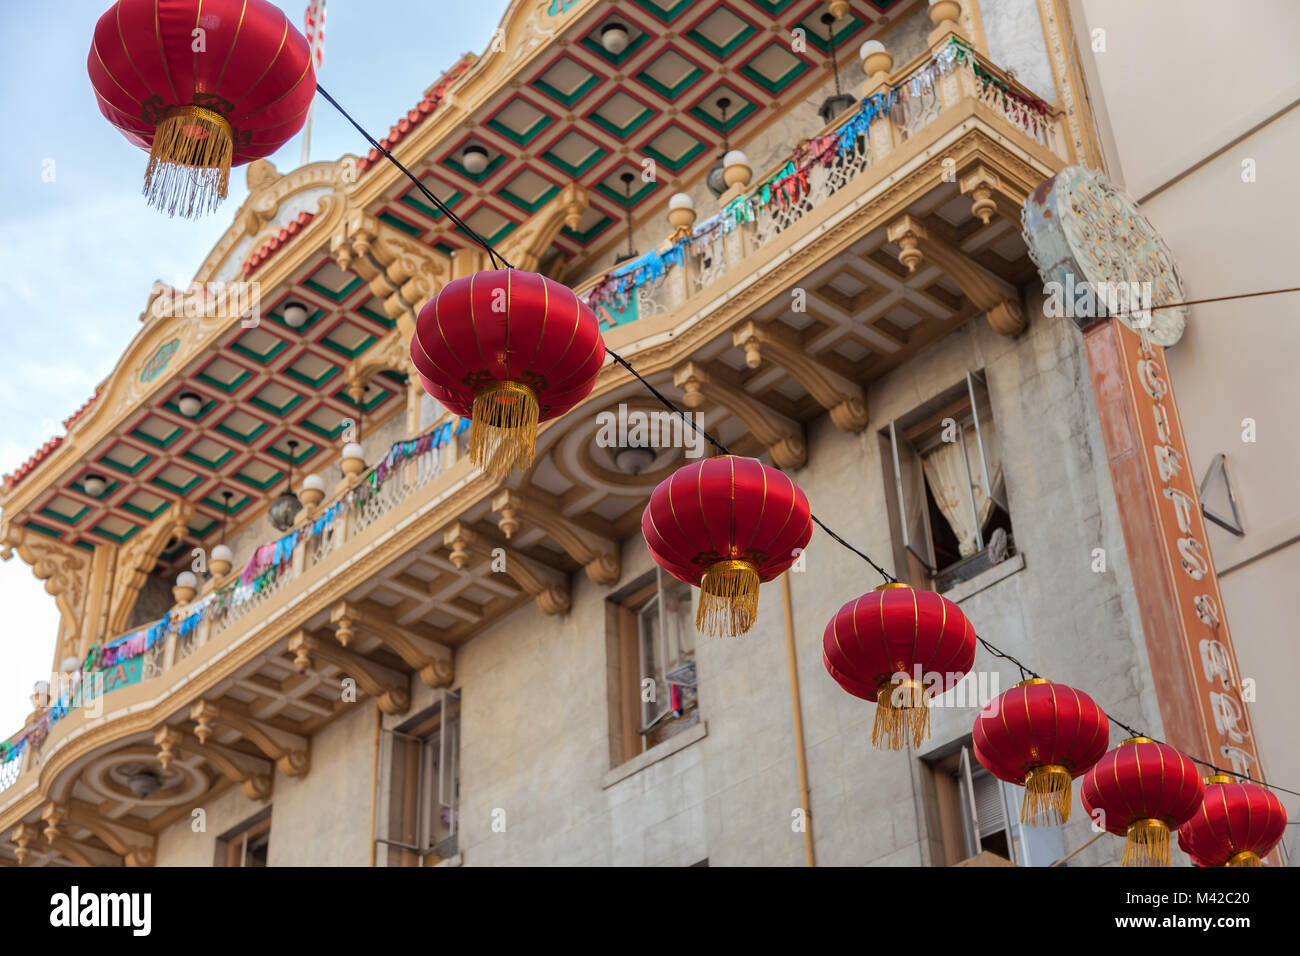 San Francisco Chinatown decora con lanterne rosse per festeggiare il nuovo anno cinese, anno del cane, California, 2018 Foto Stock